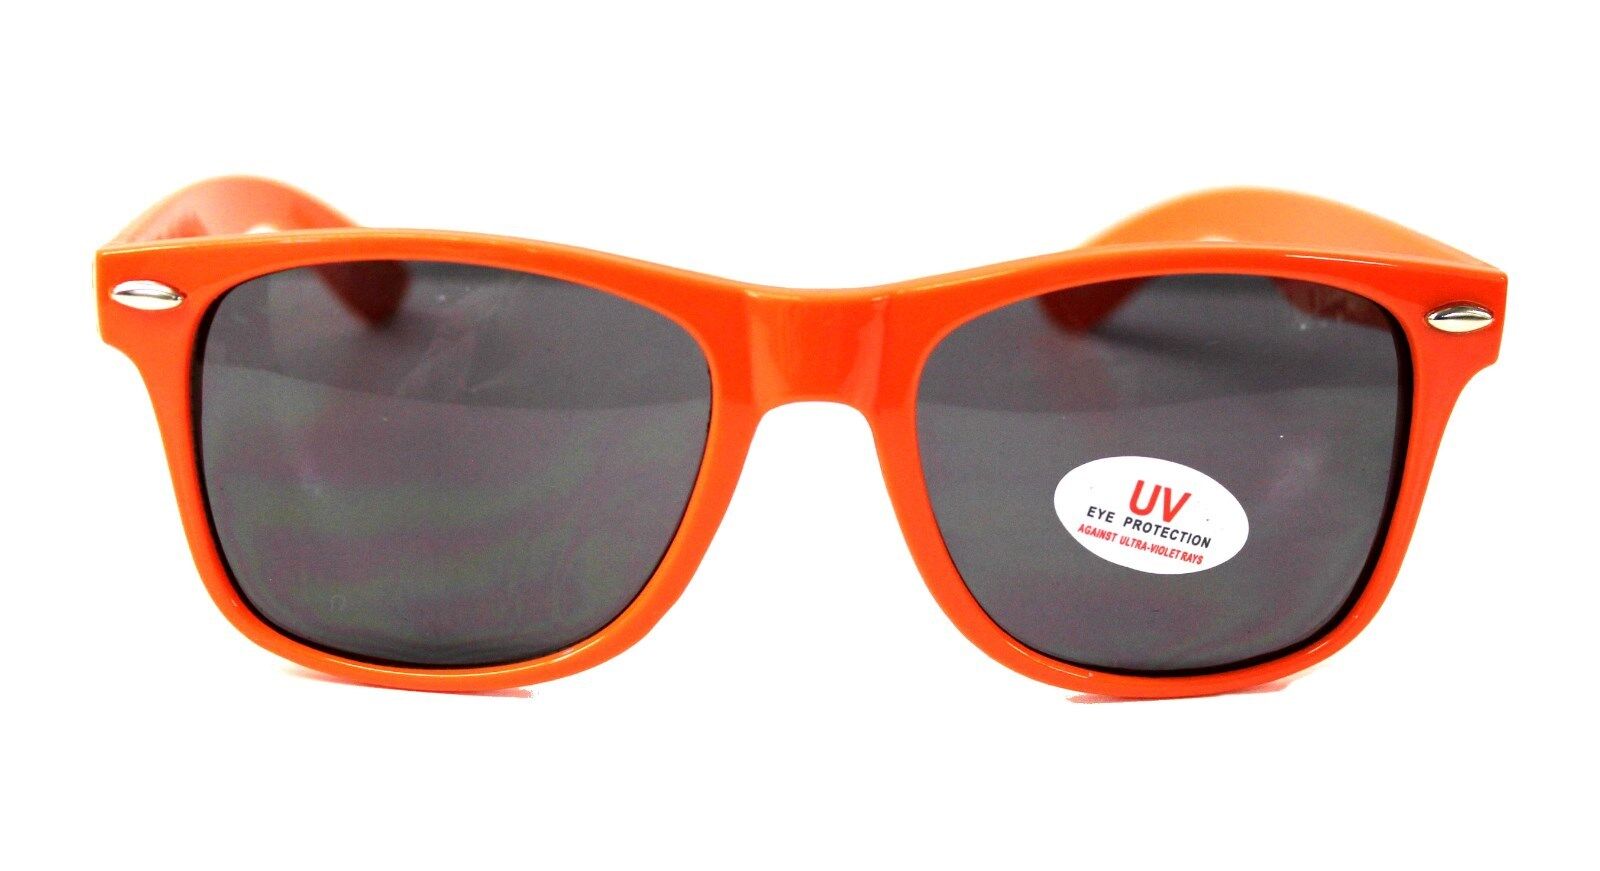 HOOTERS Sunglasses w/ UV Eye Protection  - ORANGE - Adult Unisex - NEW